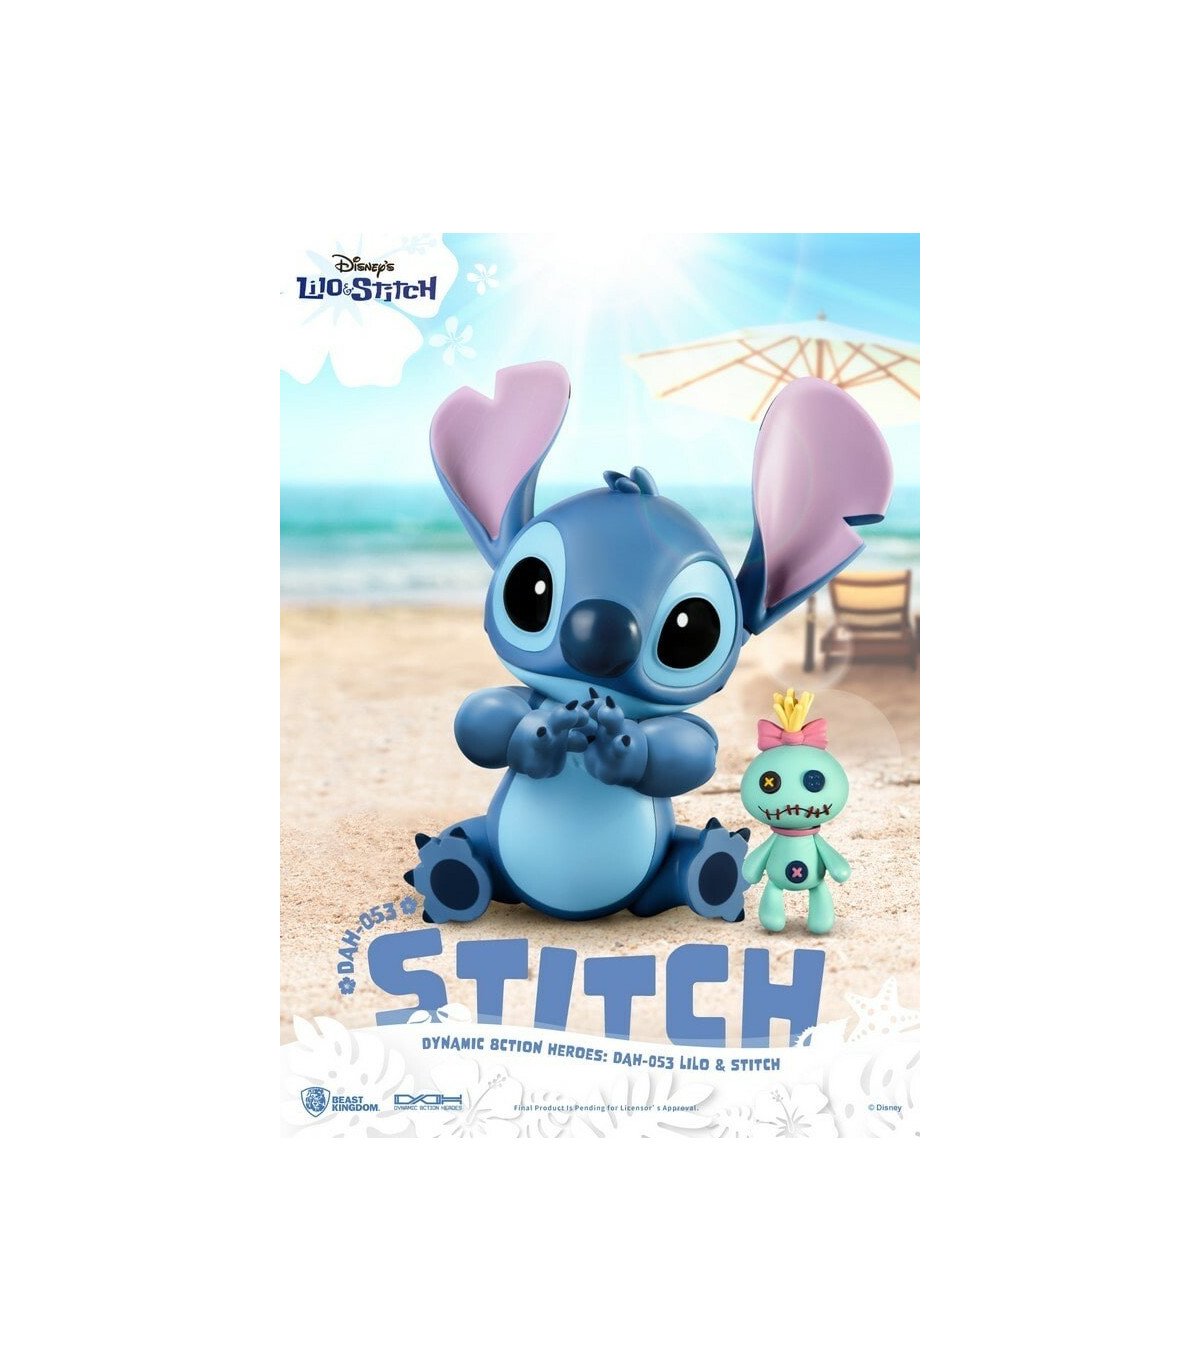 Coffret de figurines Lilo et Stitch